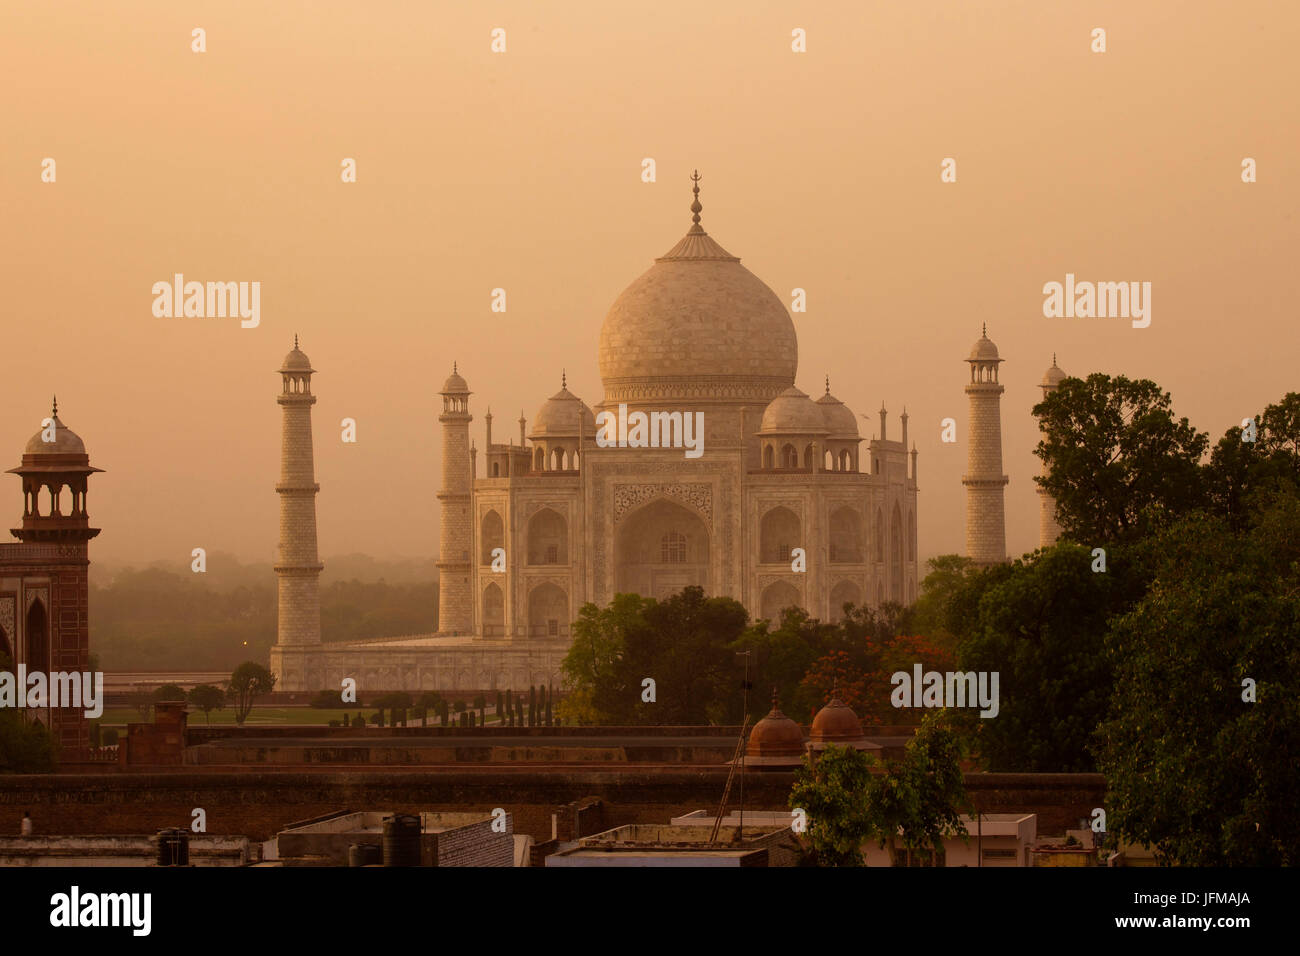 Il Taj Mahal di Agra, India settentrionale, Uttar Pedrash stato, è un immenso mausoleo di marmo bianco, costruito tra il 1631 e il 1648 per ordine dell'imperatore Mughal Shah Jahan in memoria della sua moglie prediletta (Unesco patrimonio mondiale) India Foto Stock